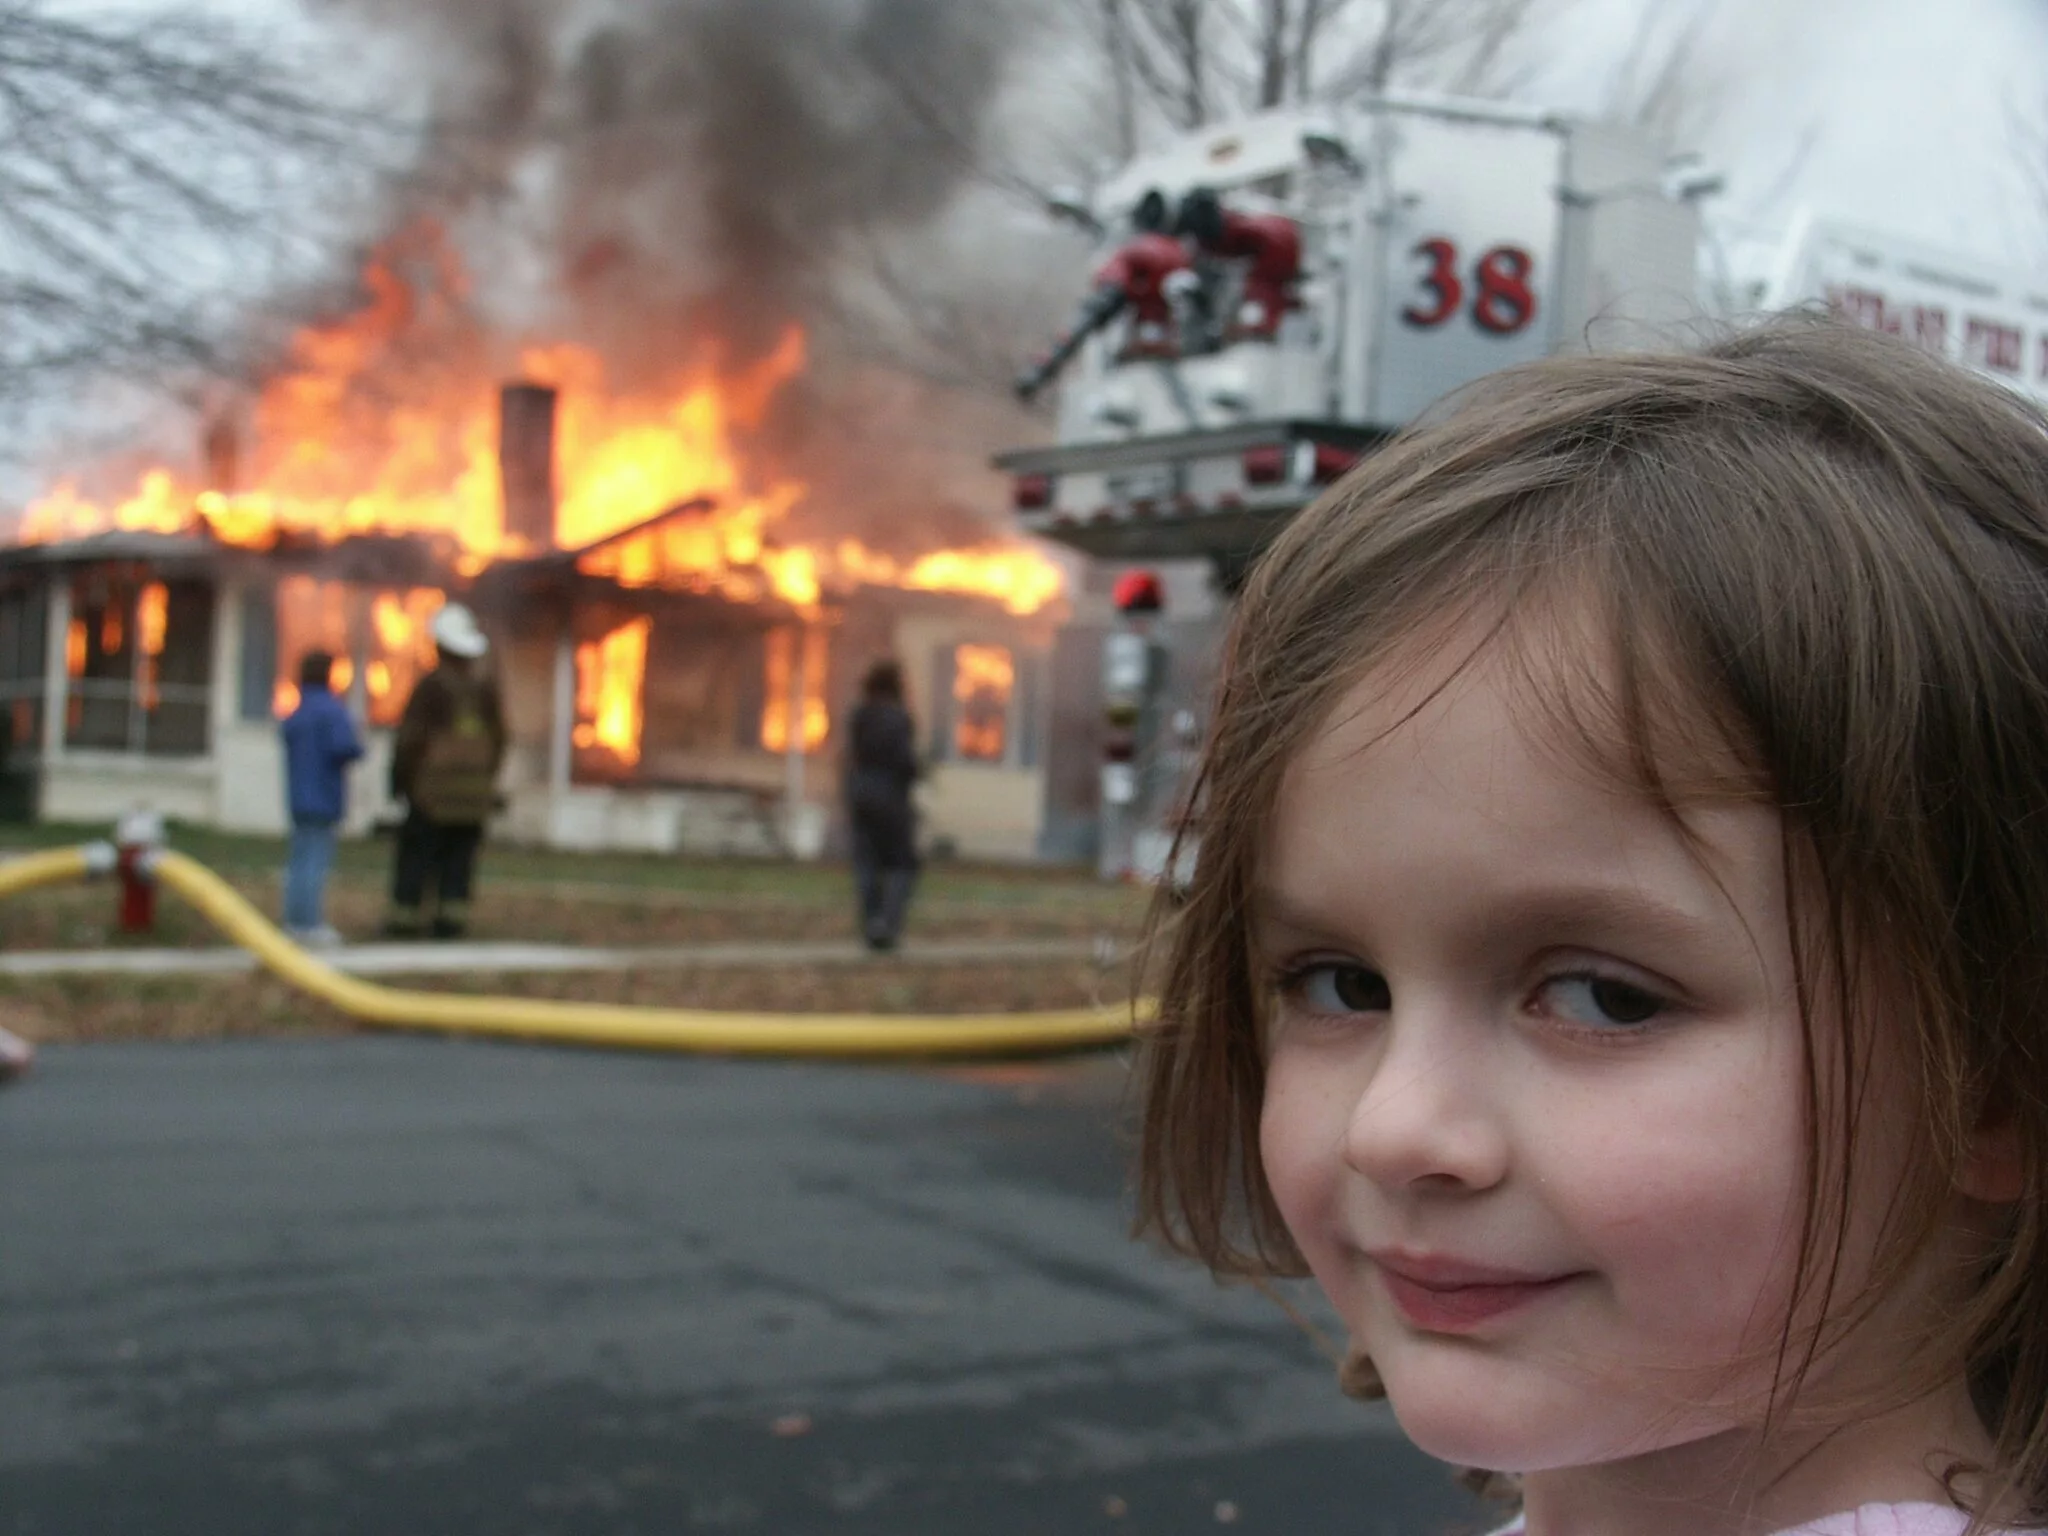 Mädchen mit verstohlenem Blick schaut in Kamera mit Brand im Hintergrund (von einem bekannten Meme)